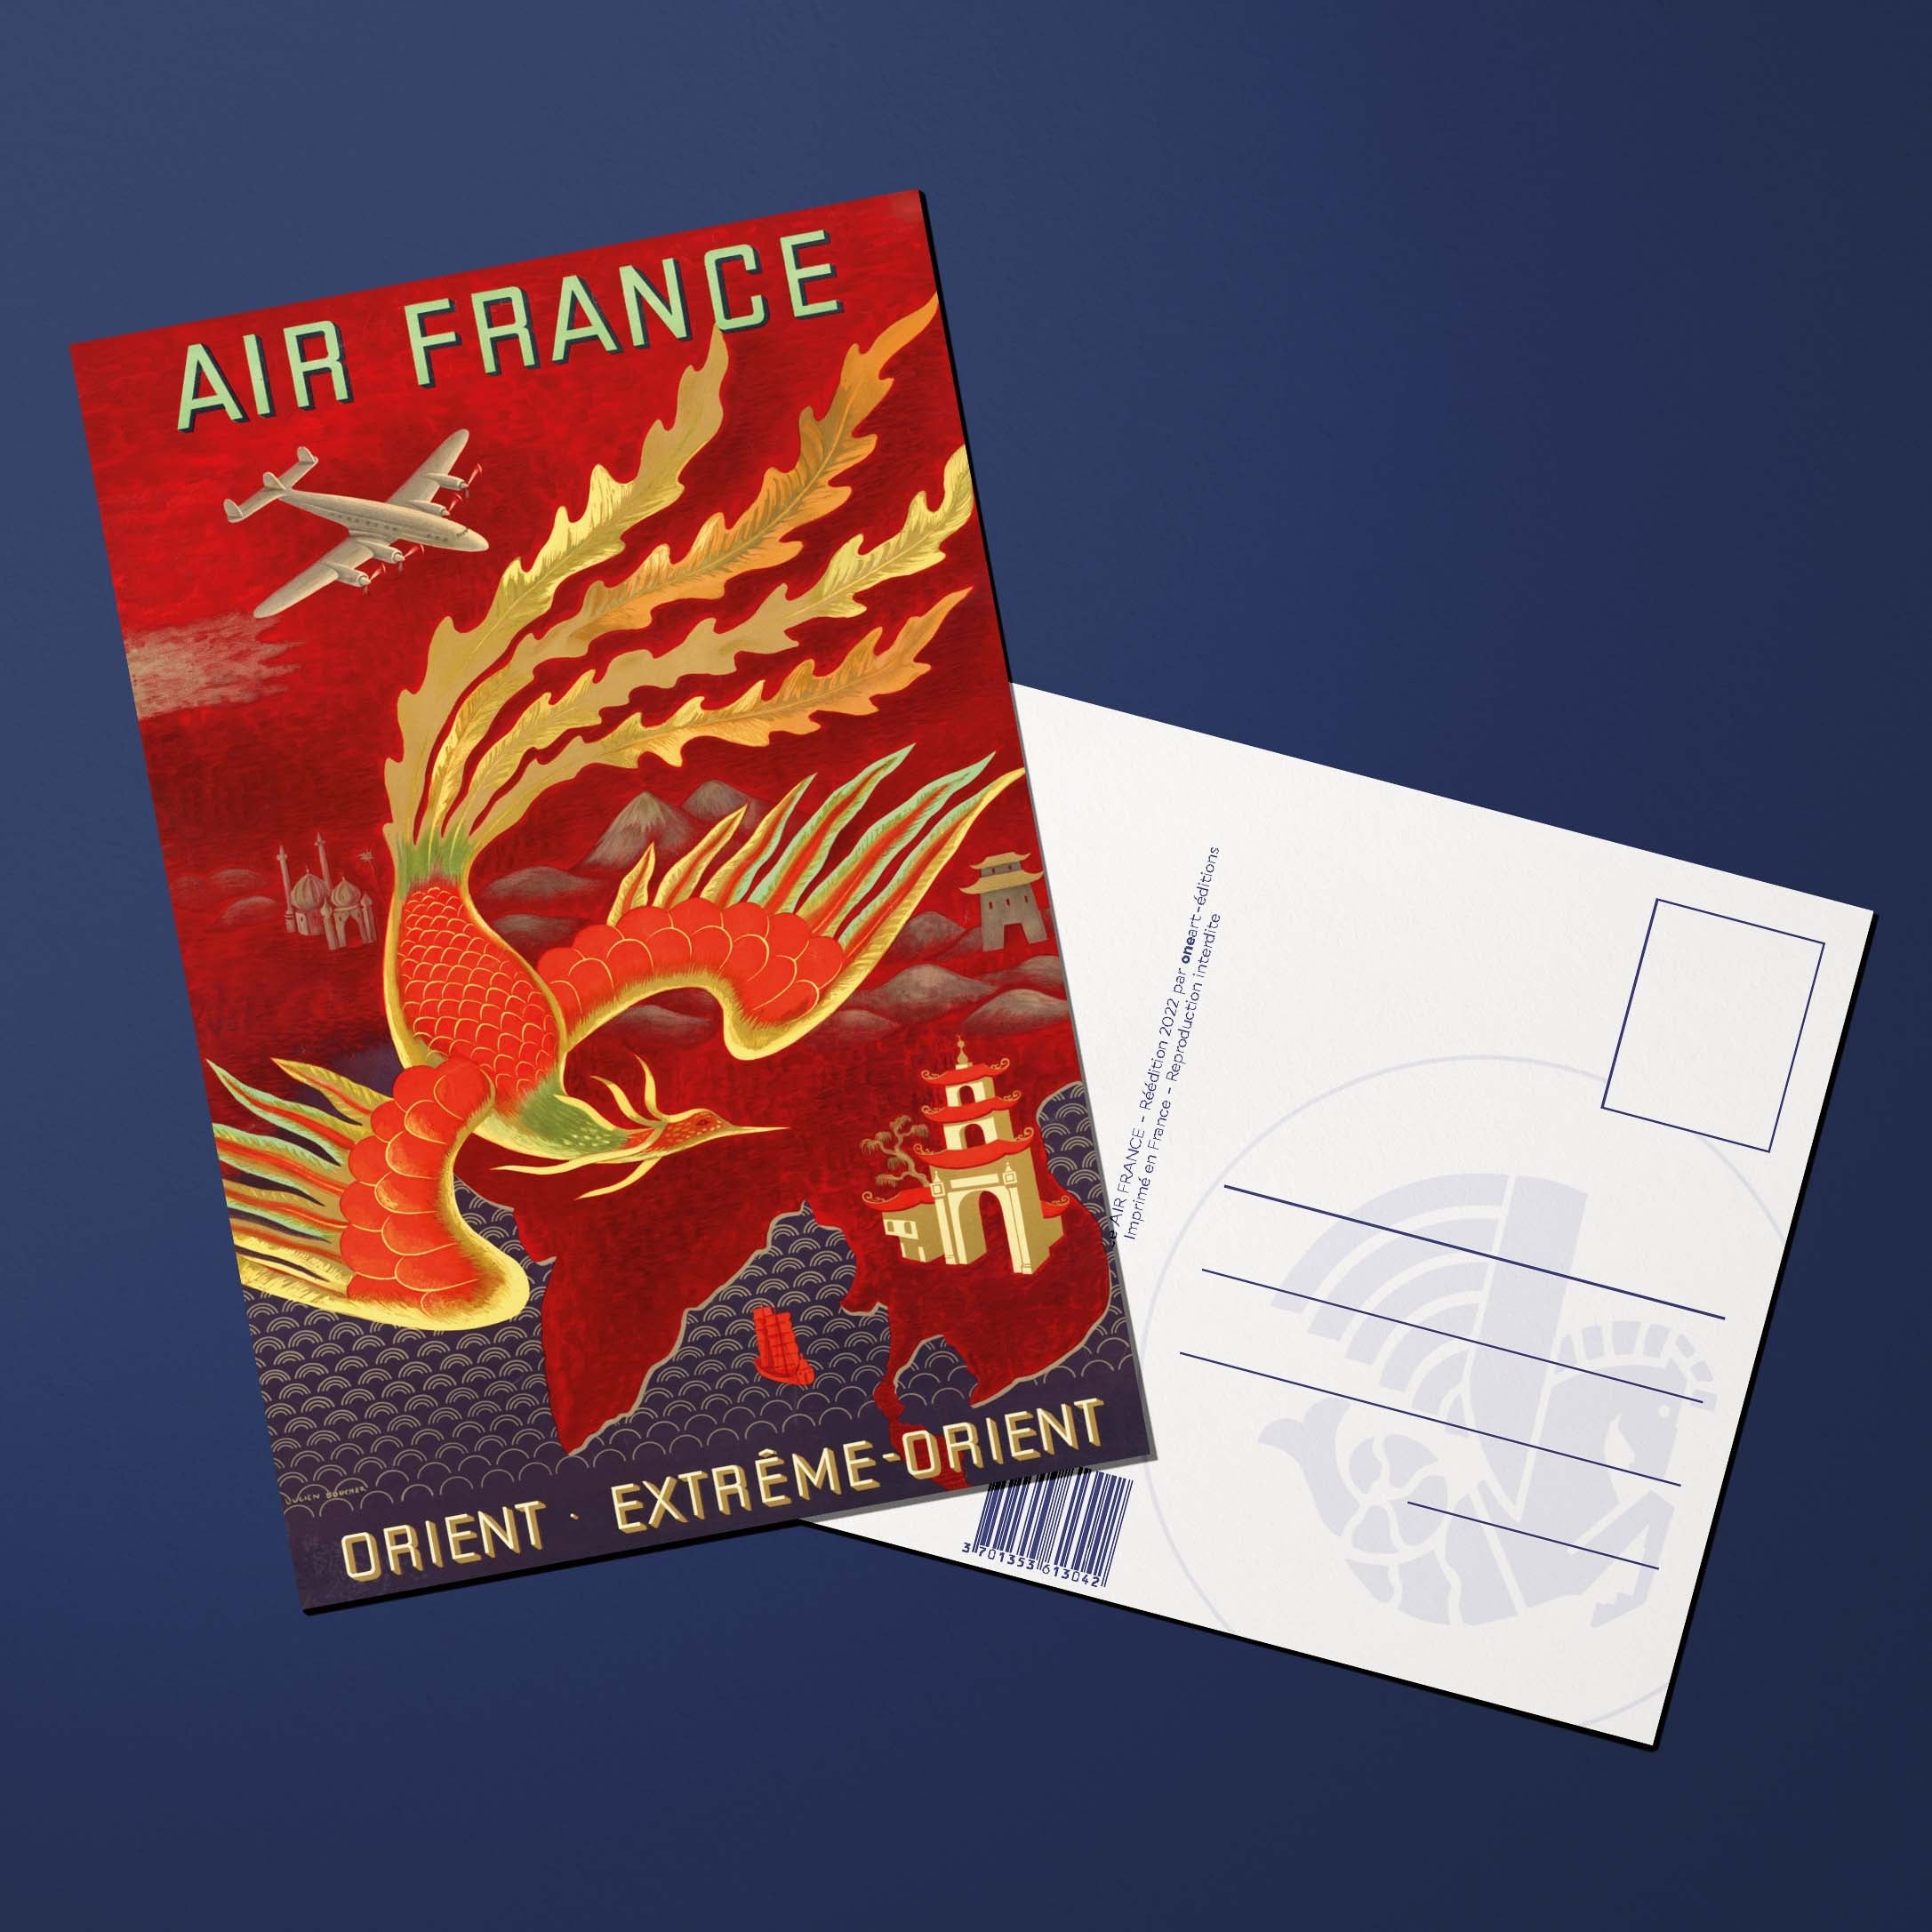 Carte postale Air France Legend Orient Extrême-Orient, phoenix